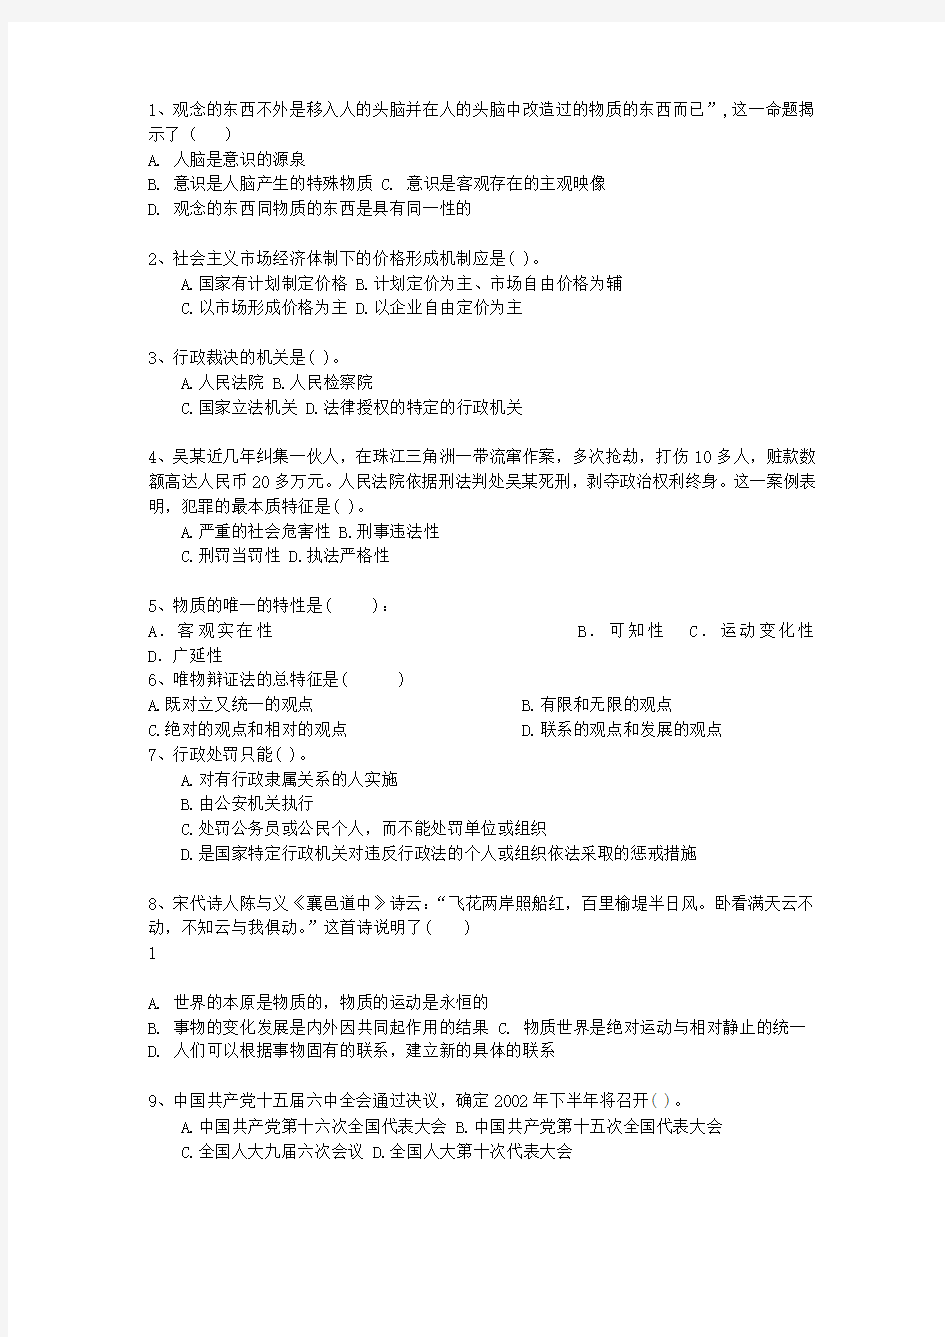 2014湖南省事业单位招聘考试公共基础知识最新考试试题库